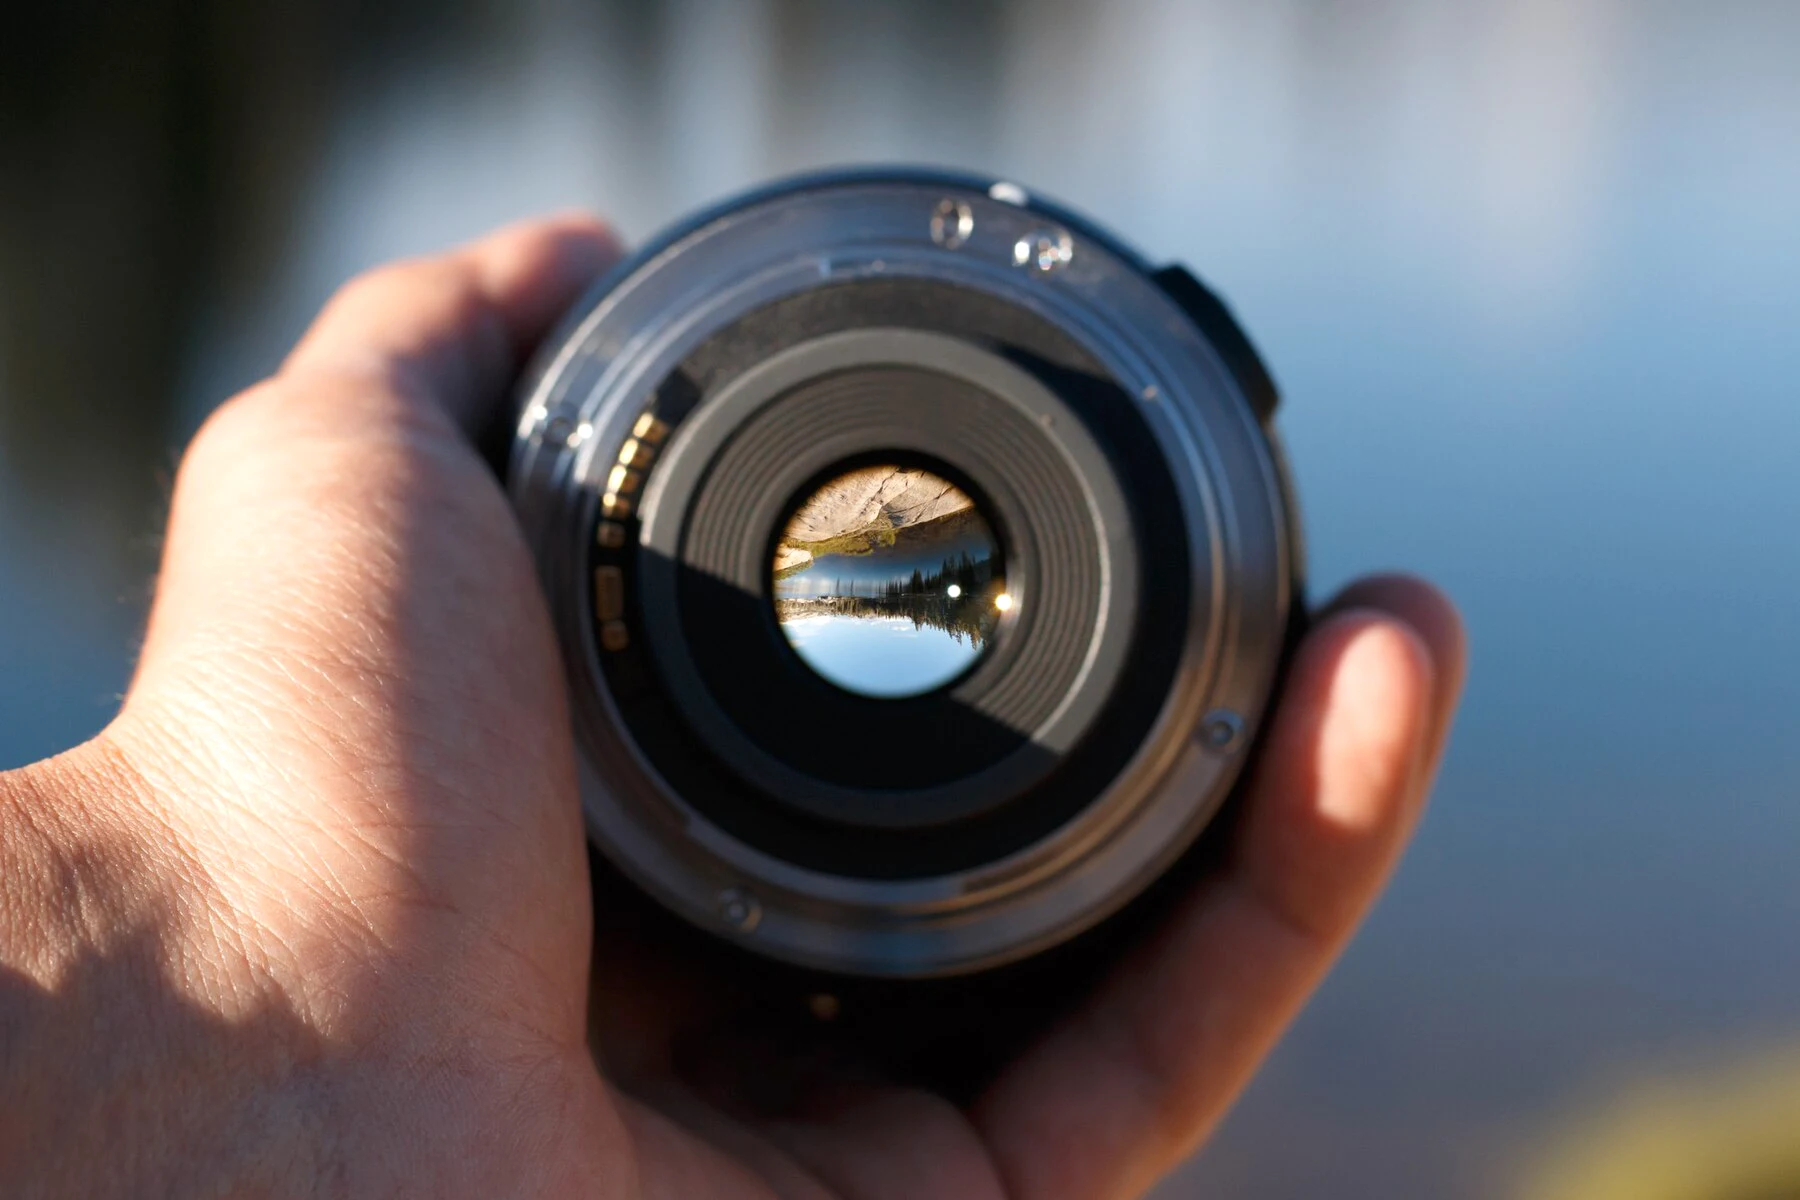 Tiêu cự lý tưởng cho việc chụp ảnh sản phẩm là 50mm hoặc 100mm.